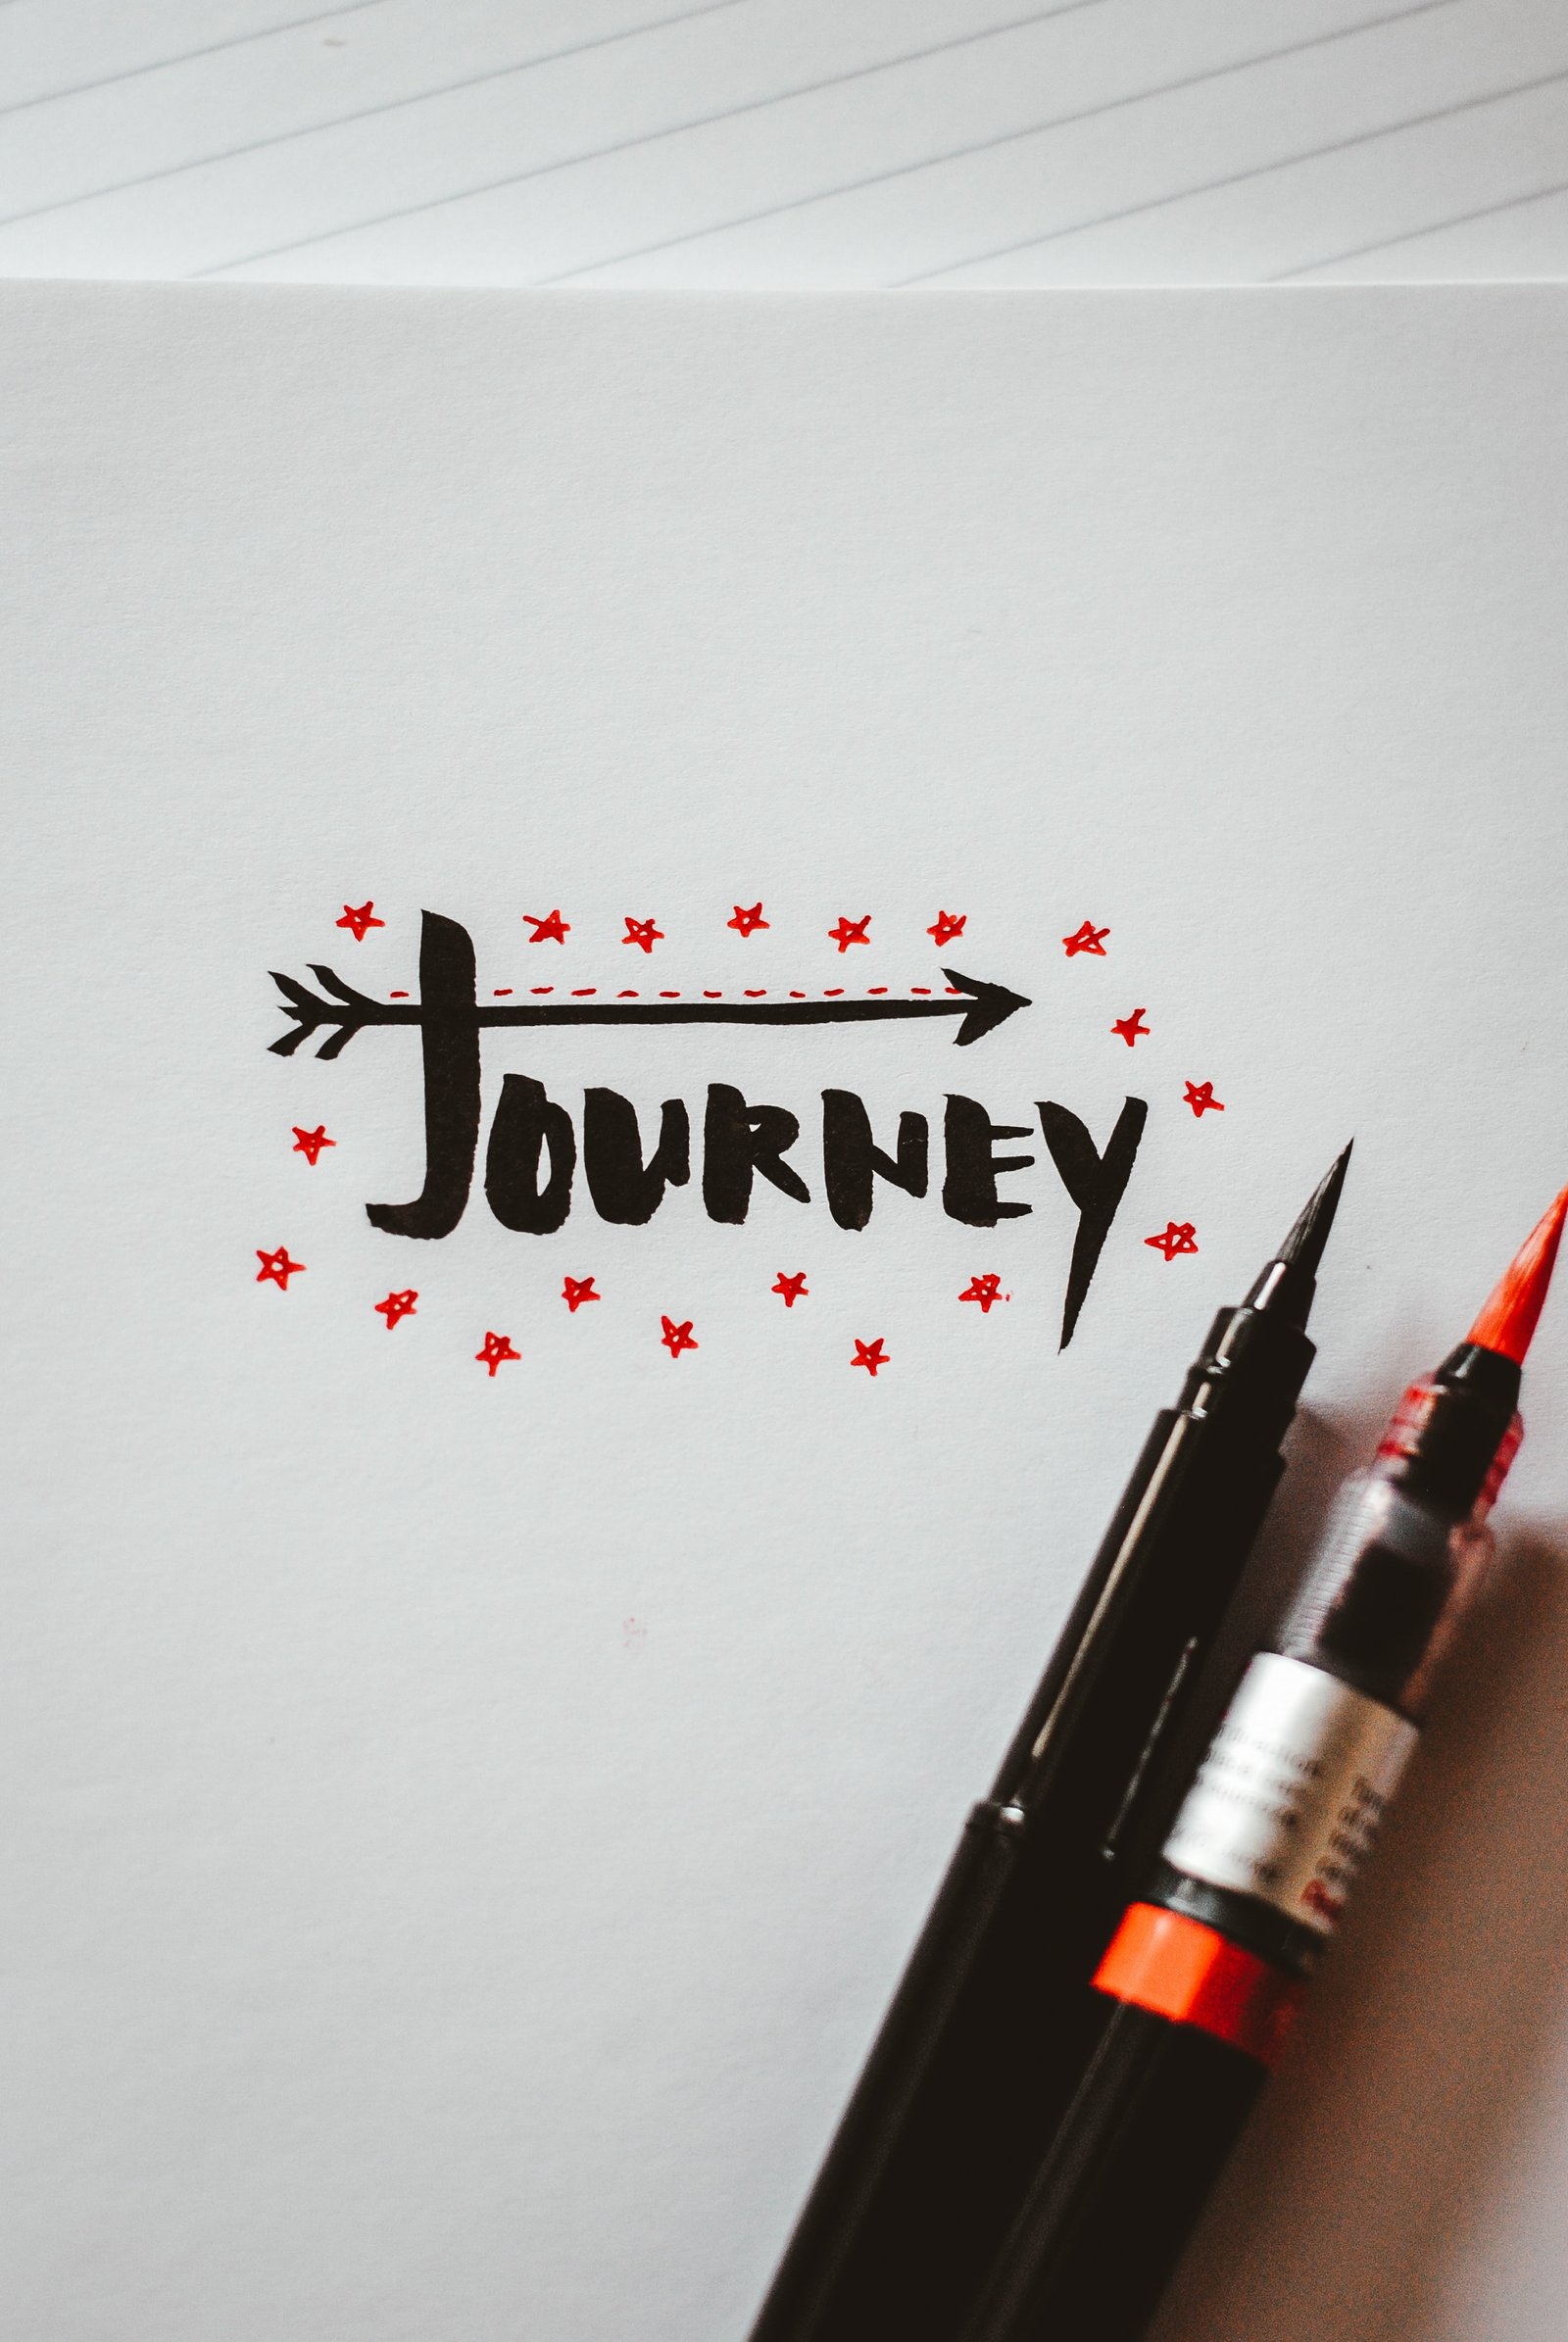 Journey written on paper